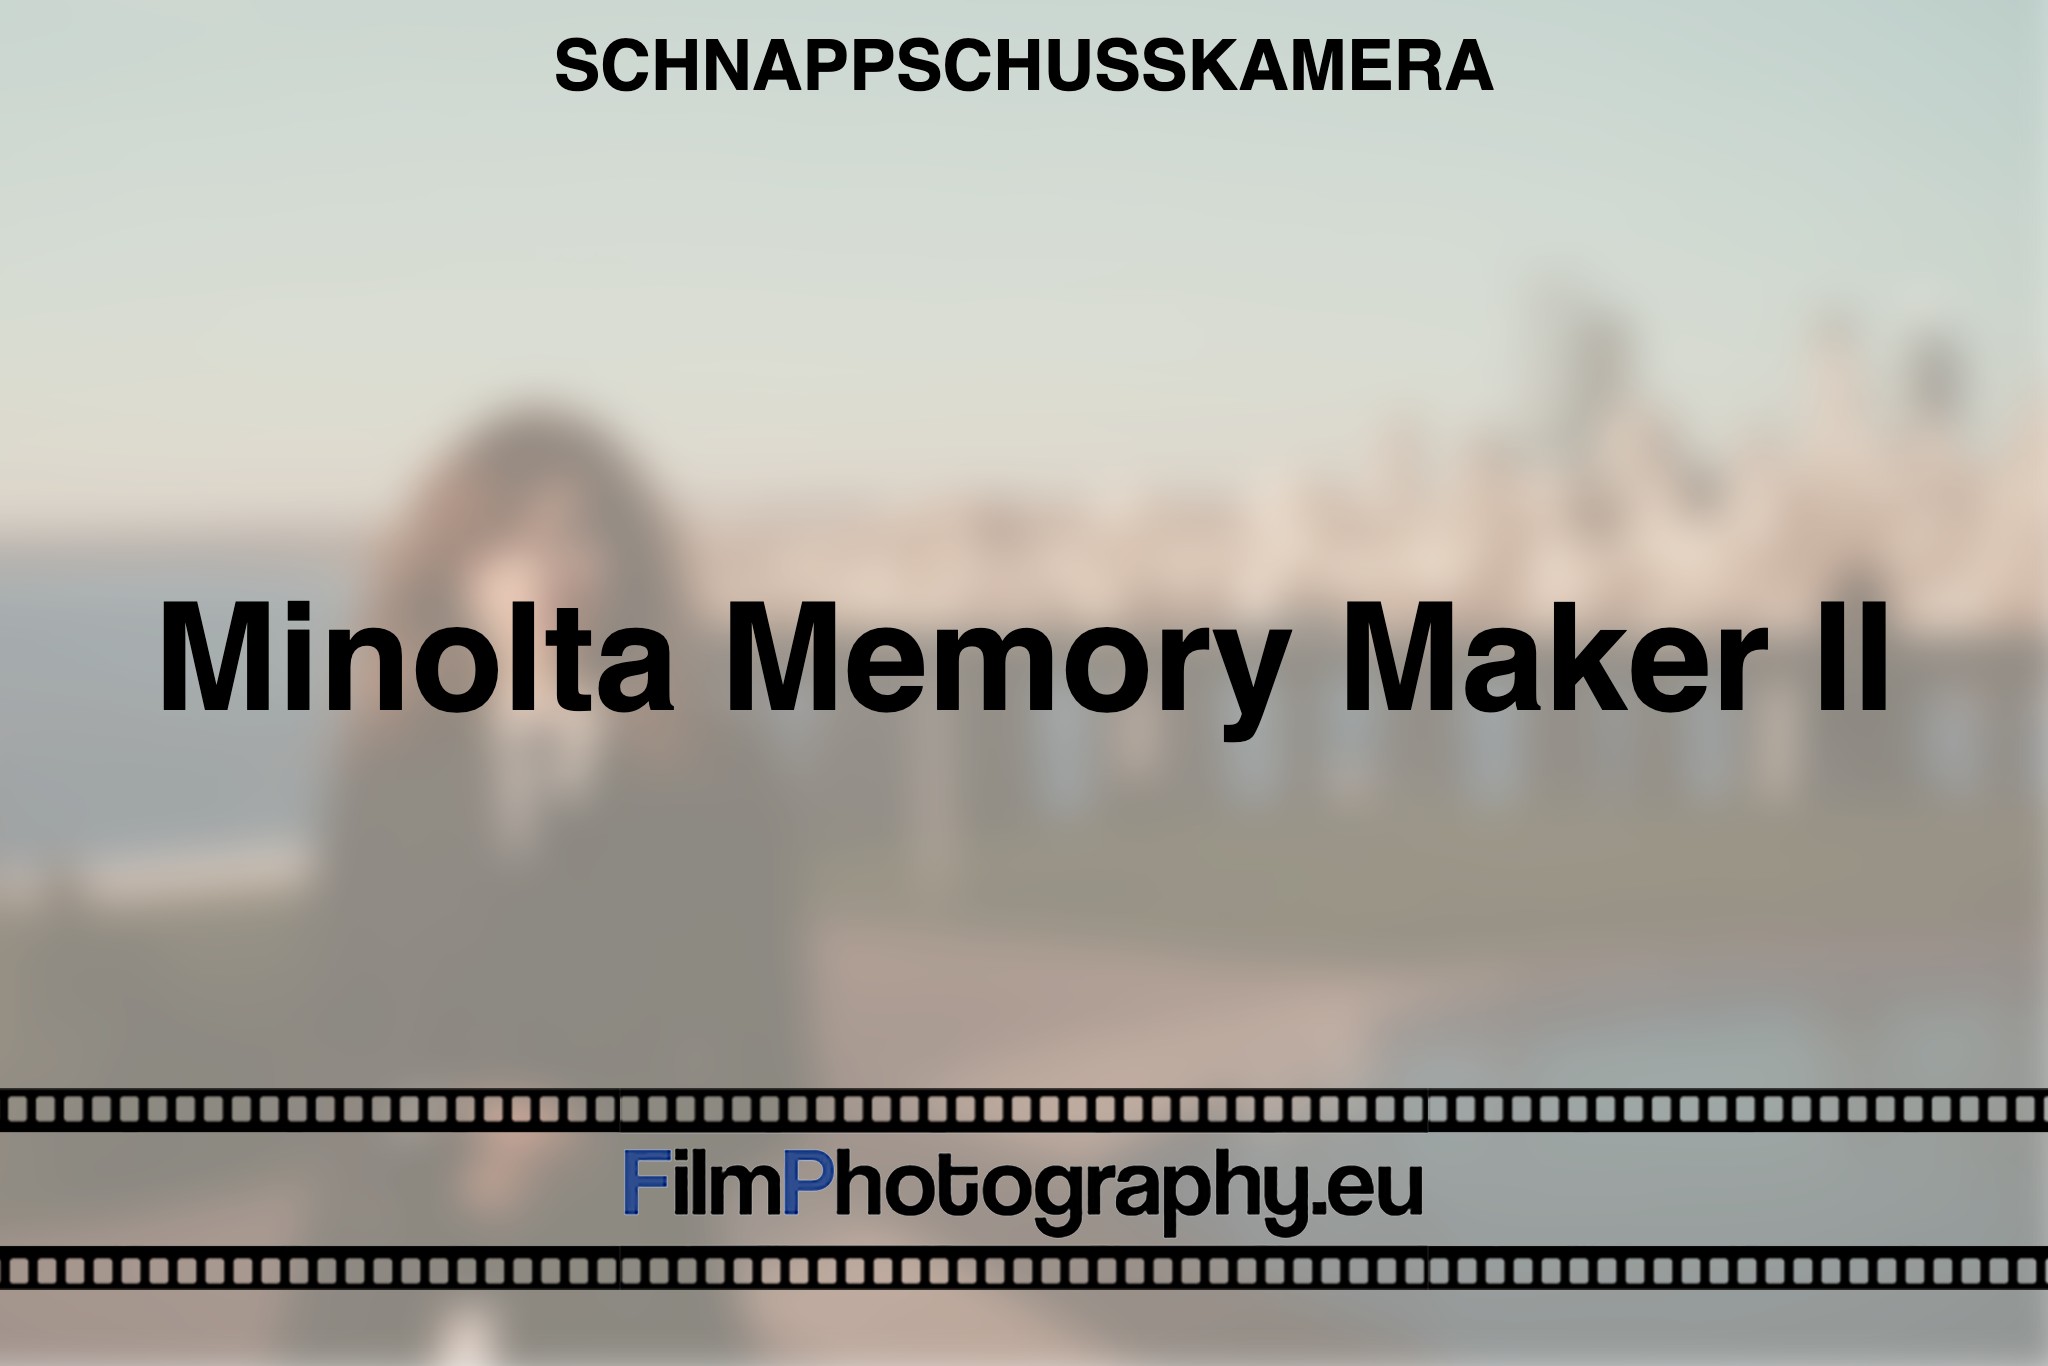 minolta-memory-maker-ii-schnappschusskamera-bnv